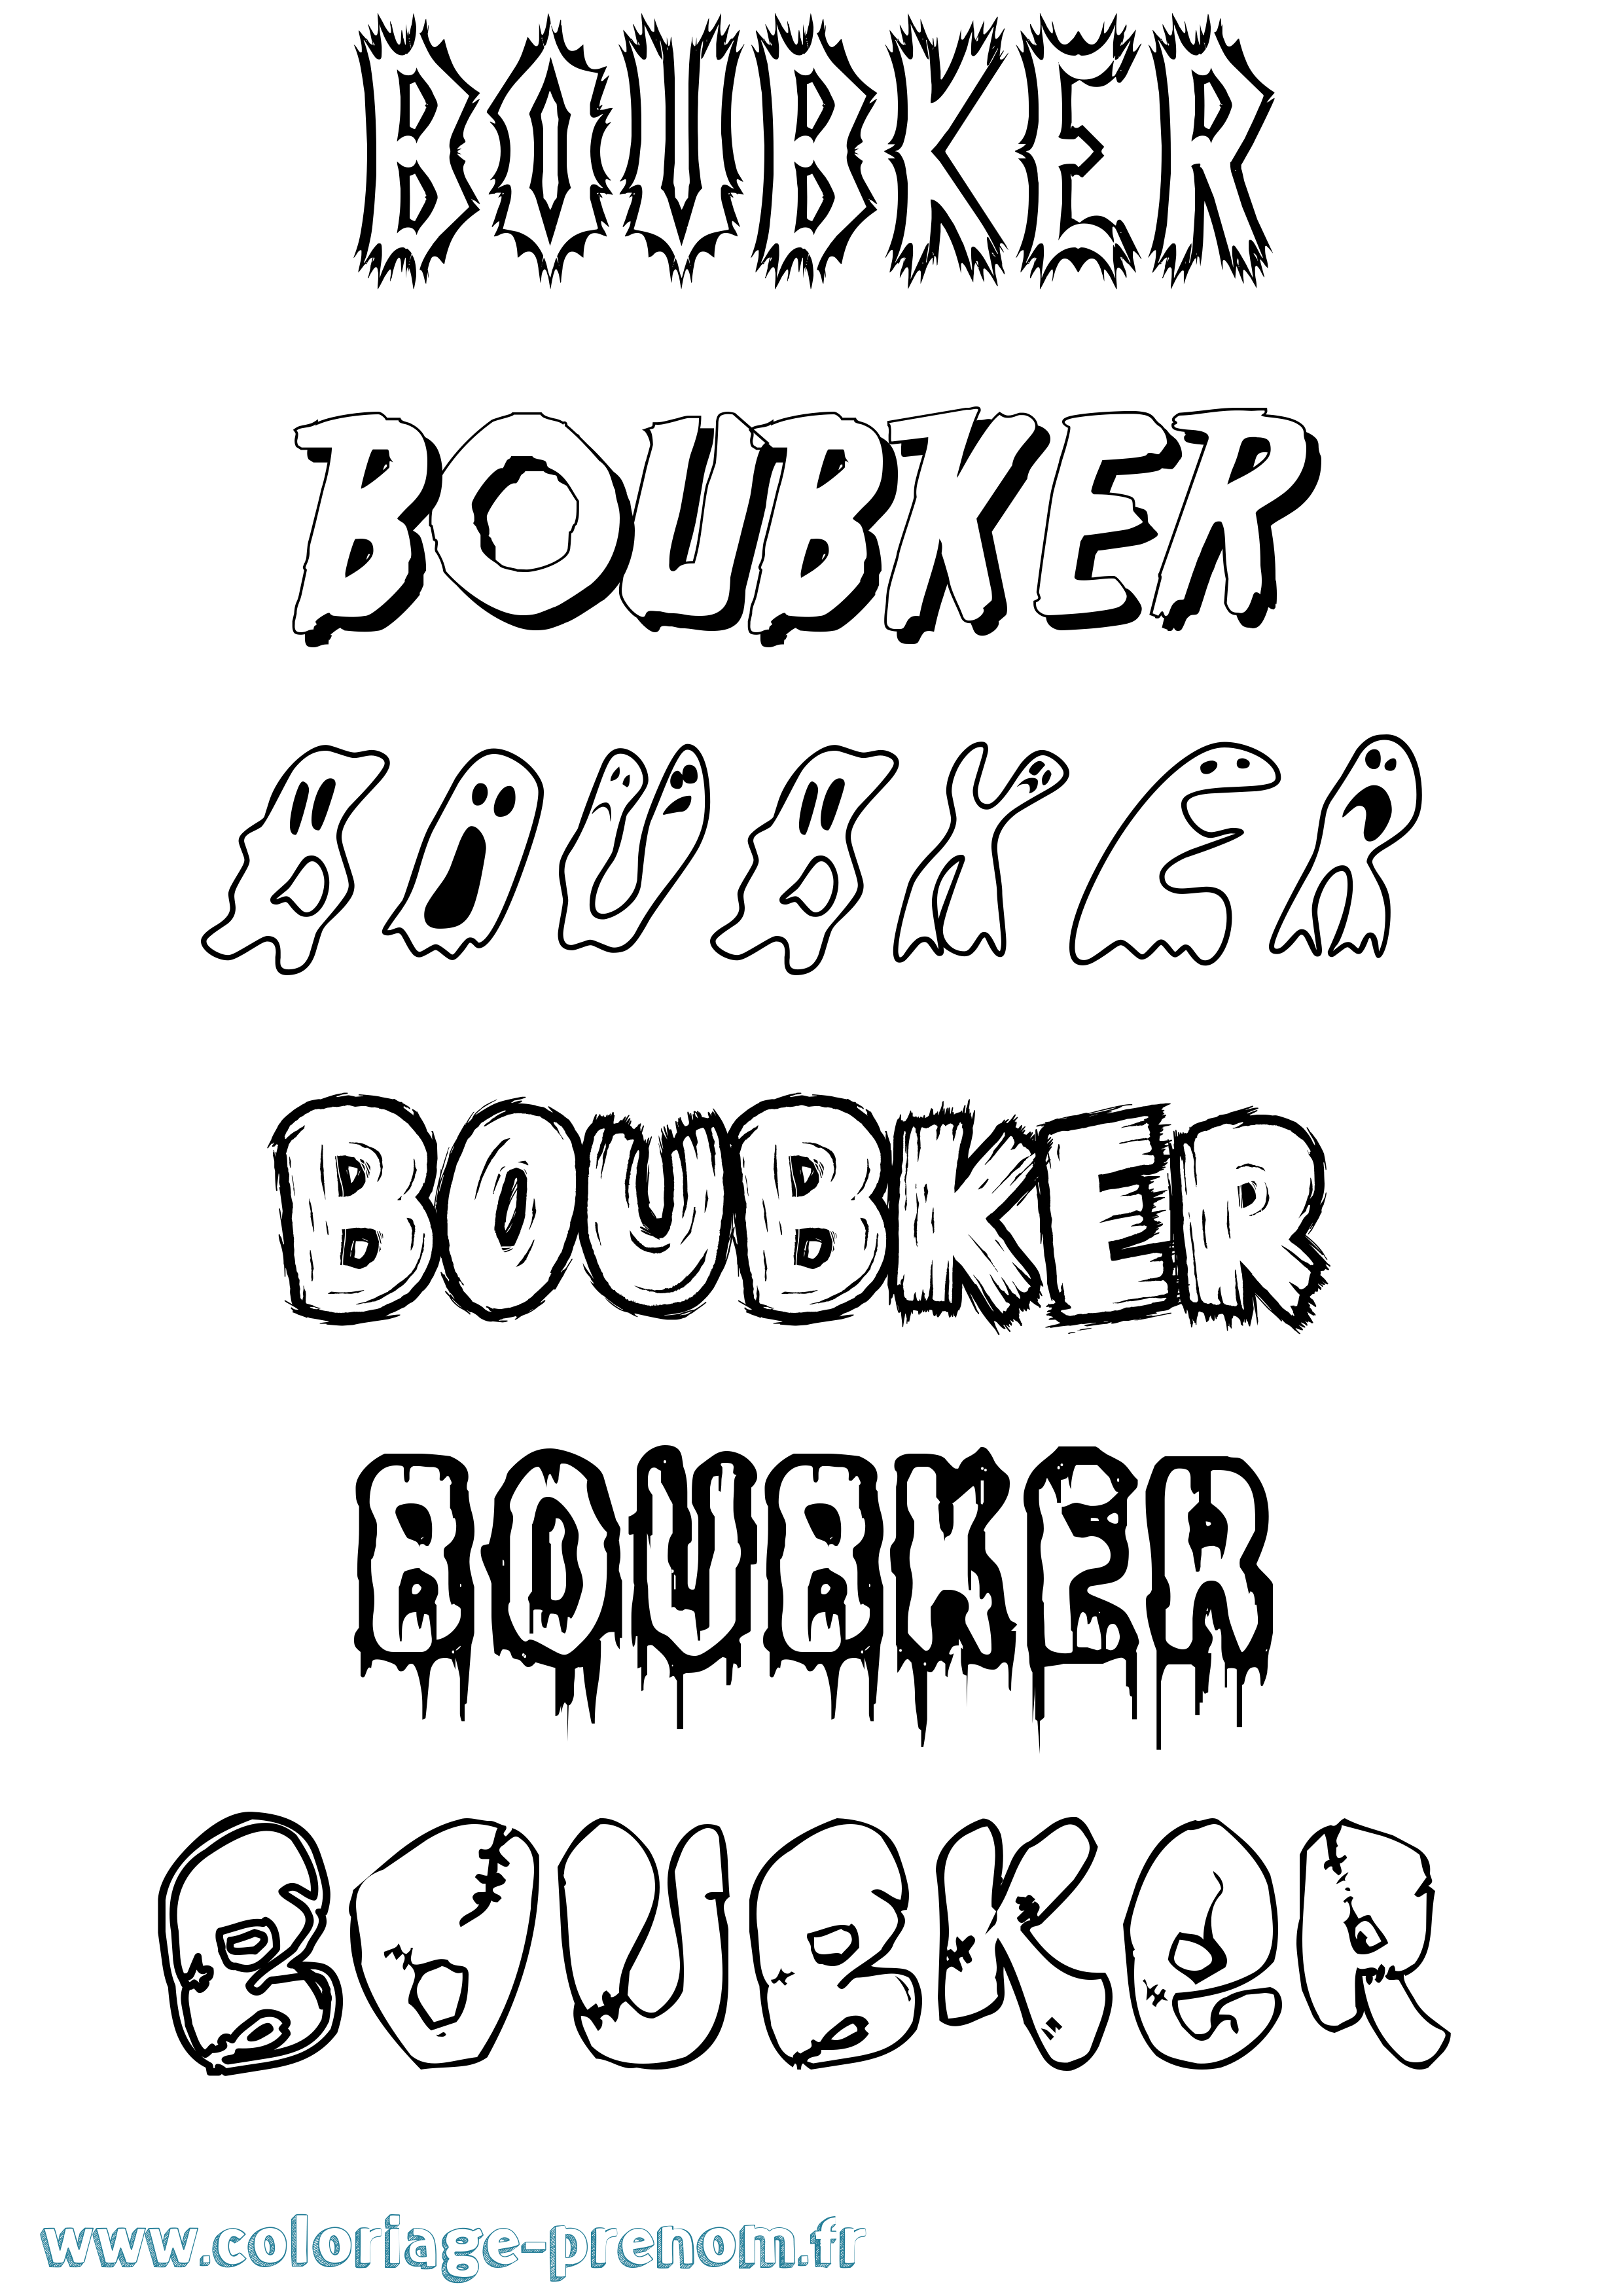 Coloriage prénom Boubker Frisson